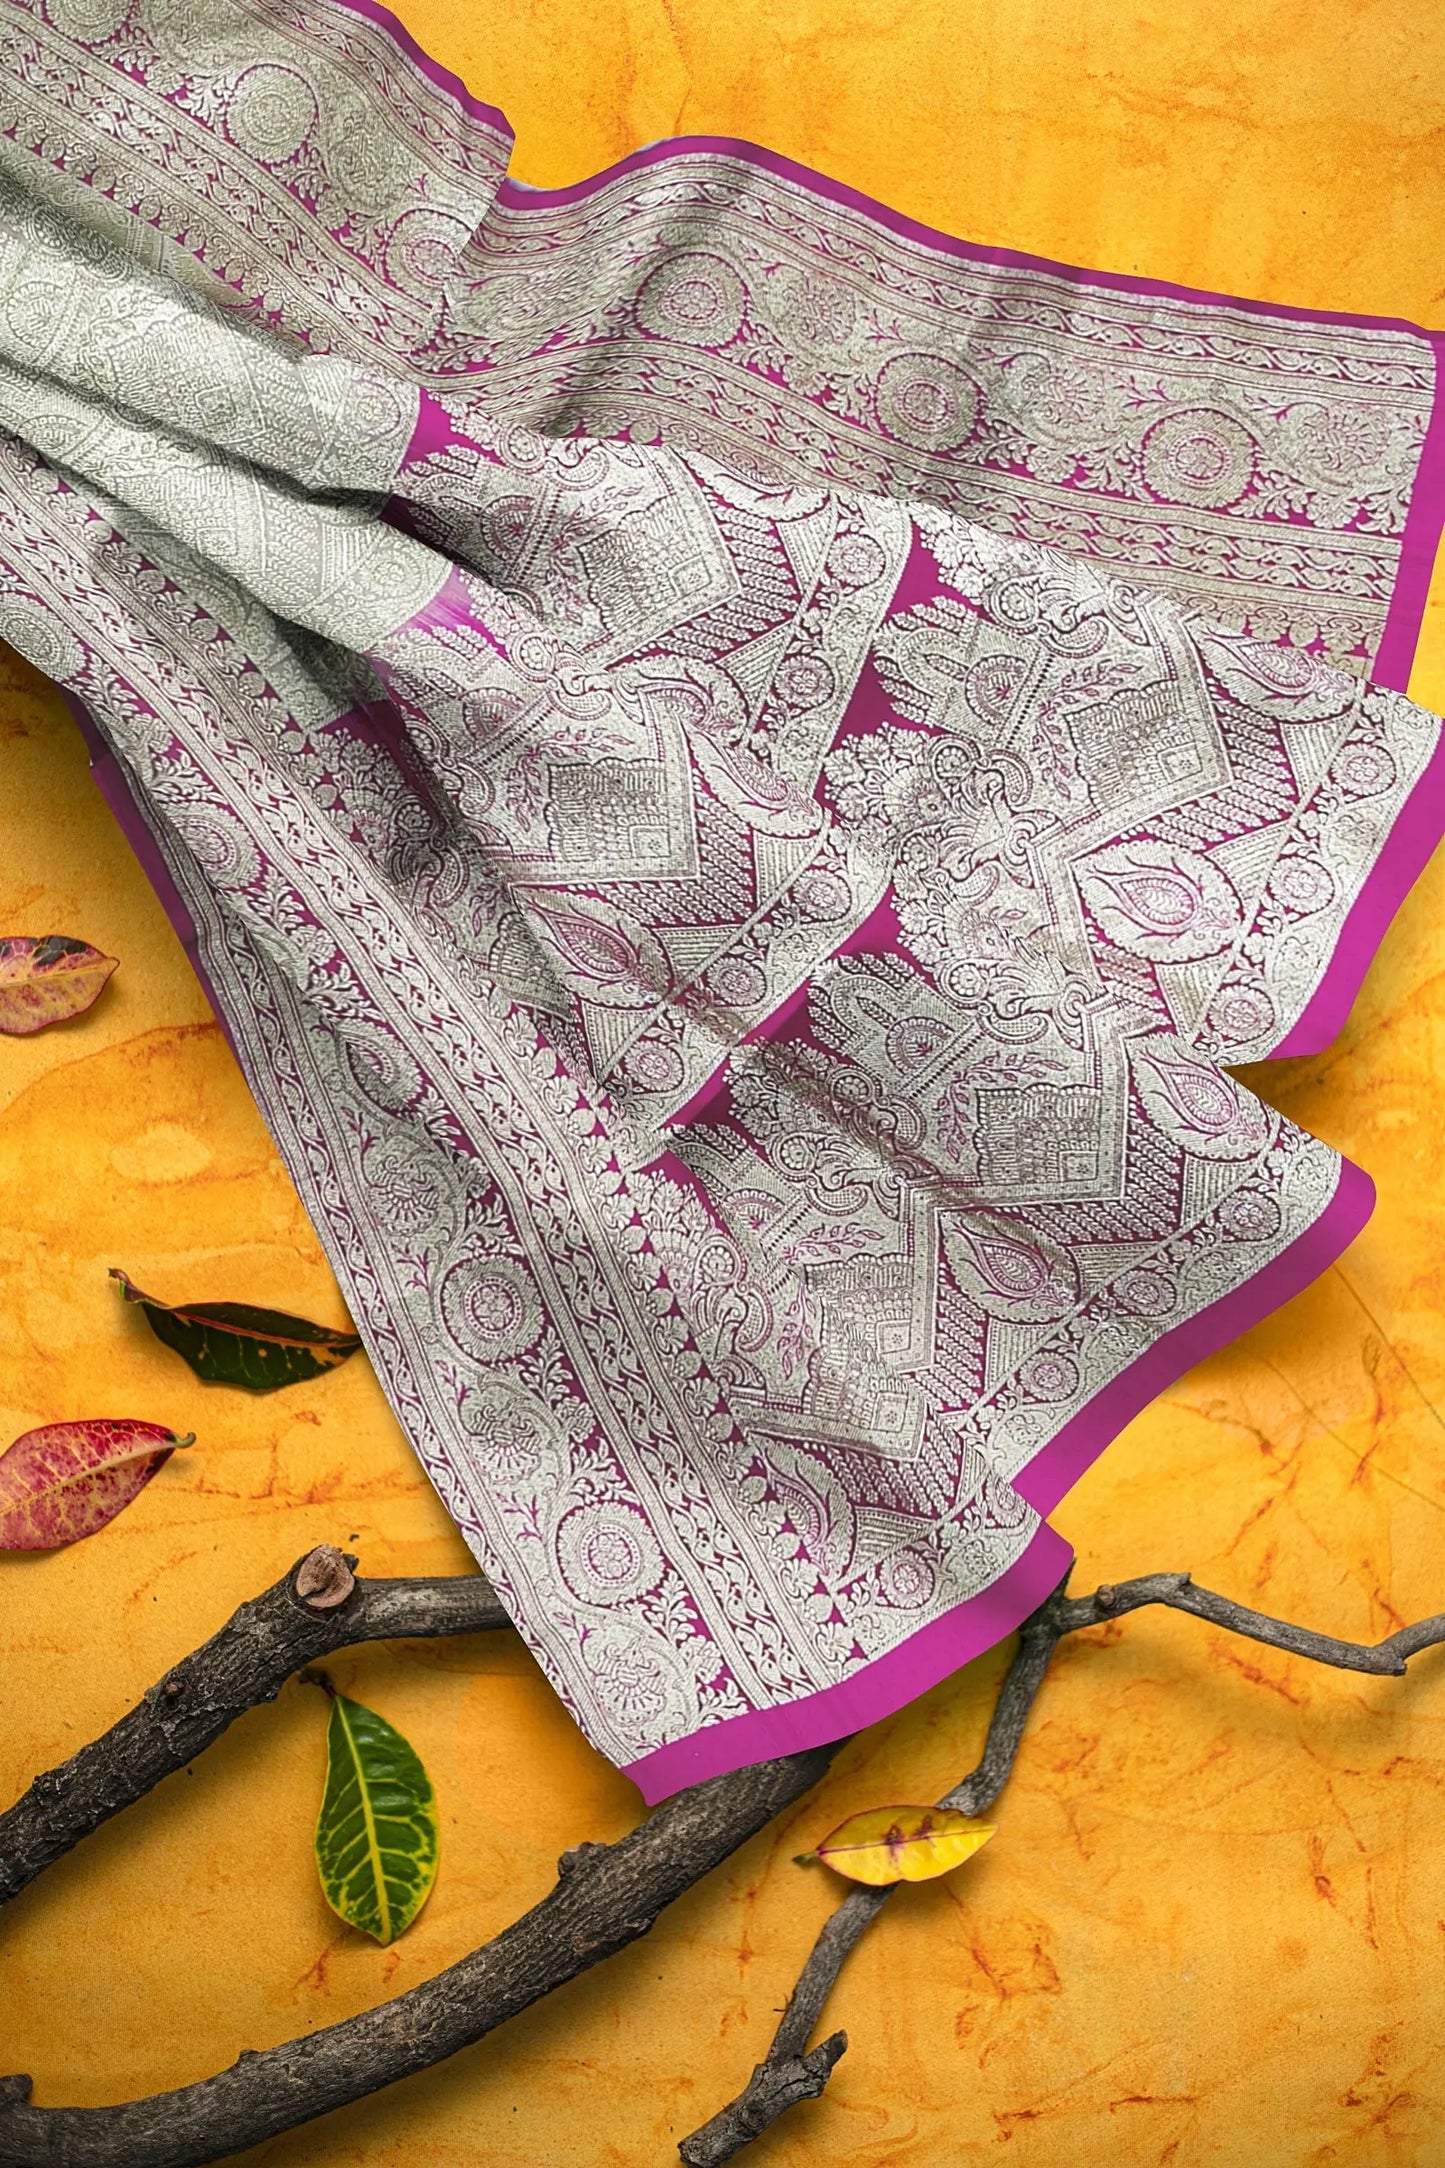 Pure Banarasi silk saree Putul's fashion